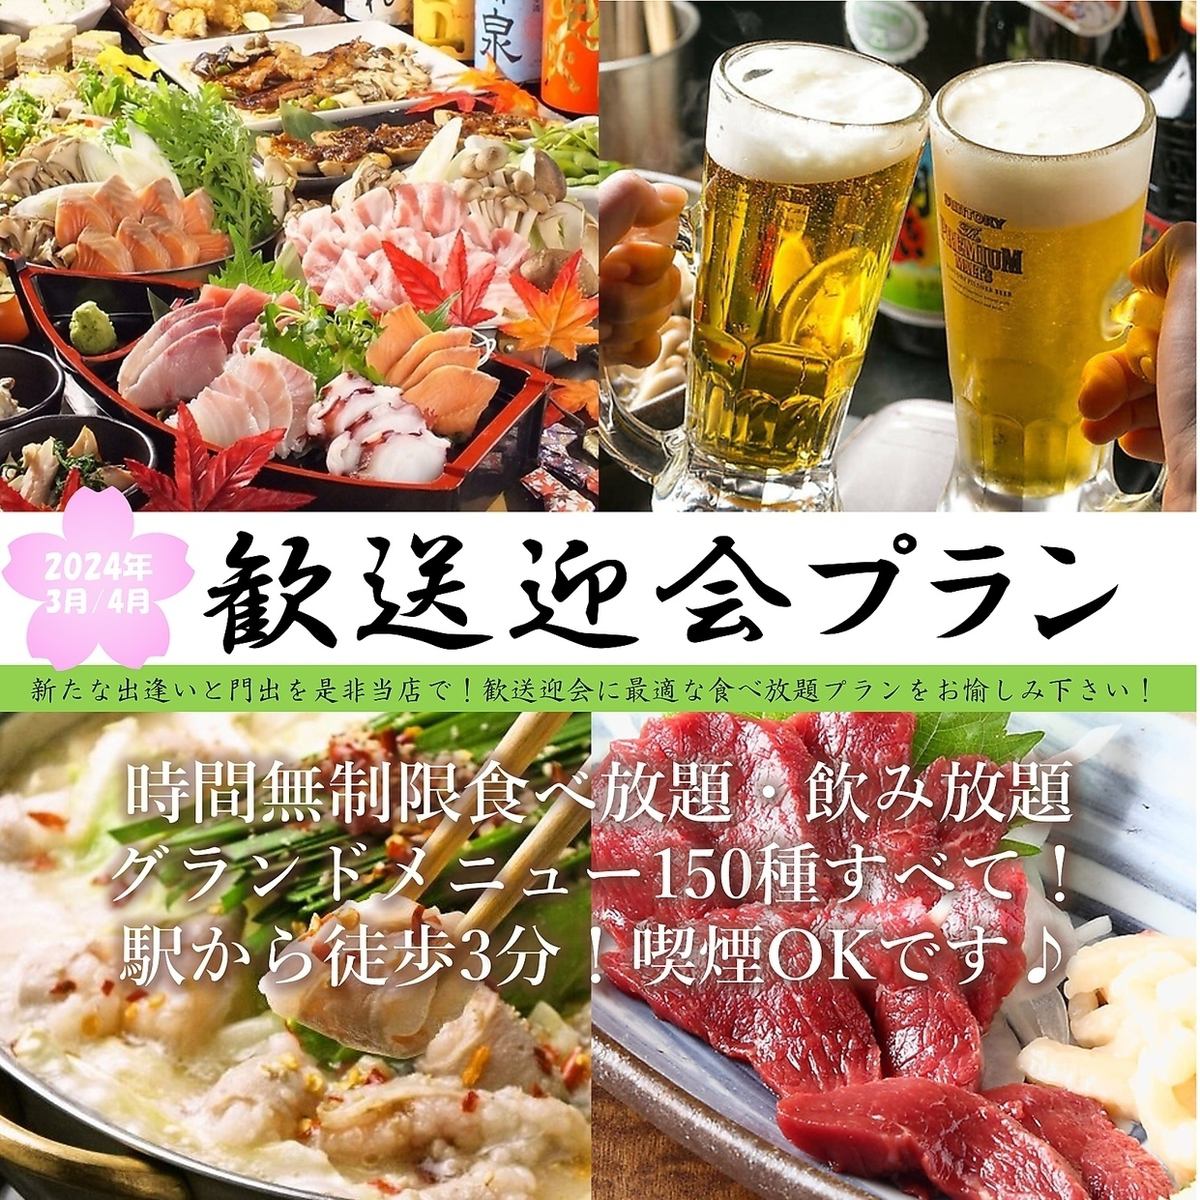 從橫濱站步行3分鐘◎ 150種菜色、無時間限制的吃喝玩樂居酒屋！